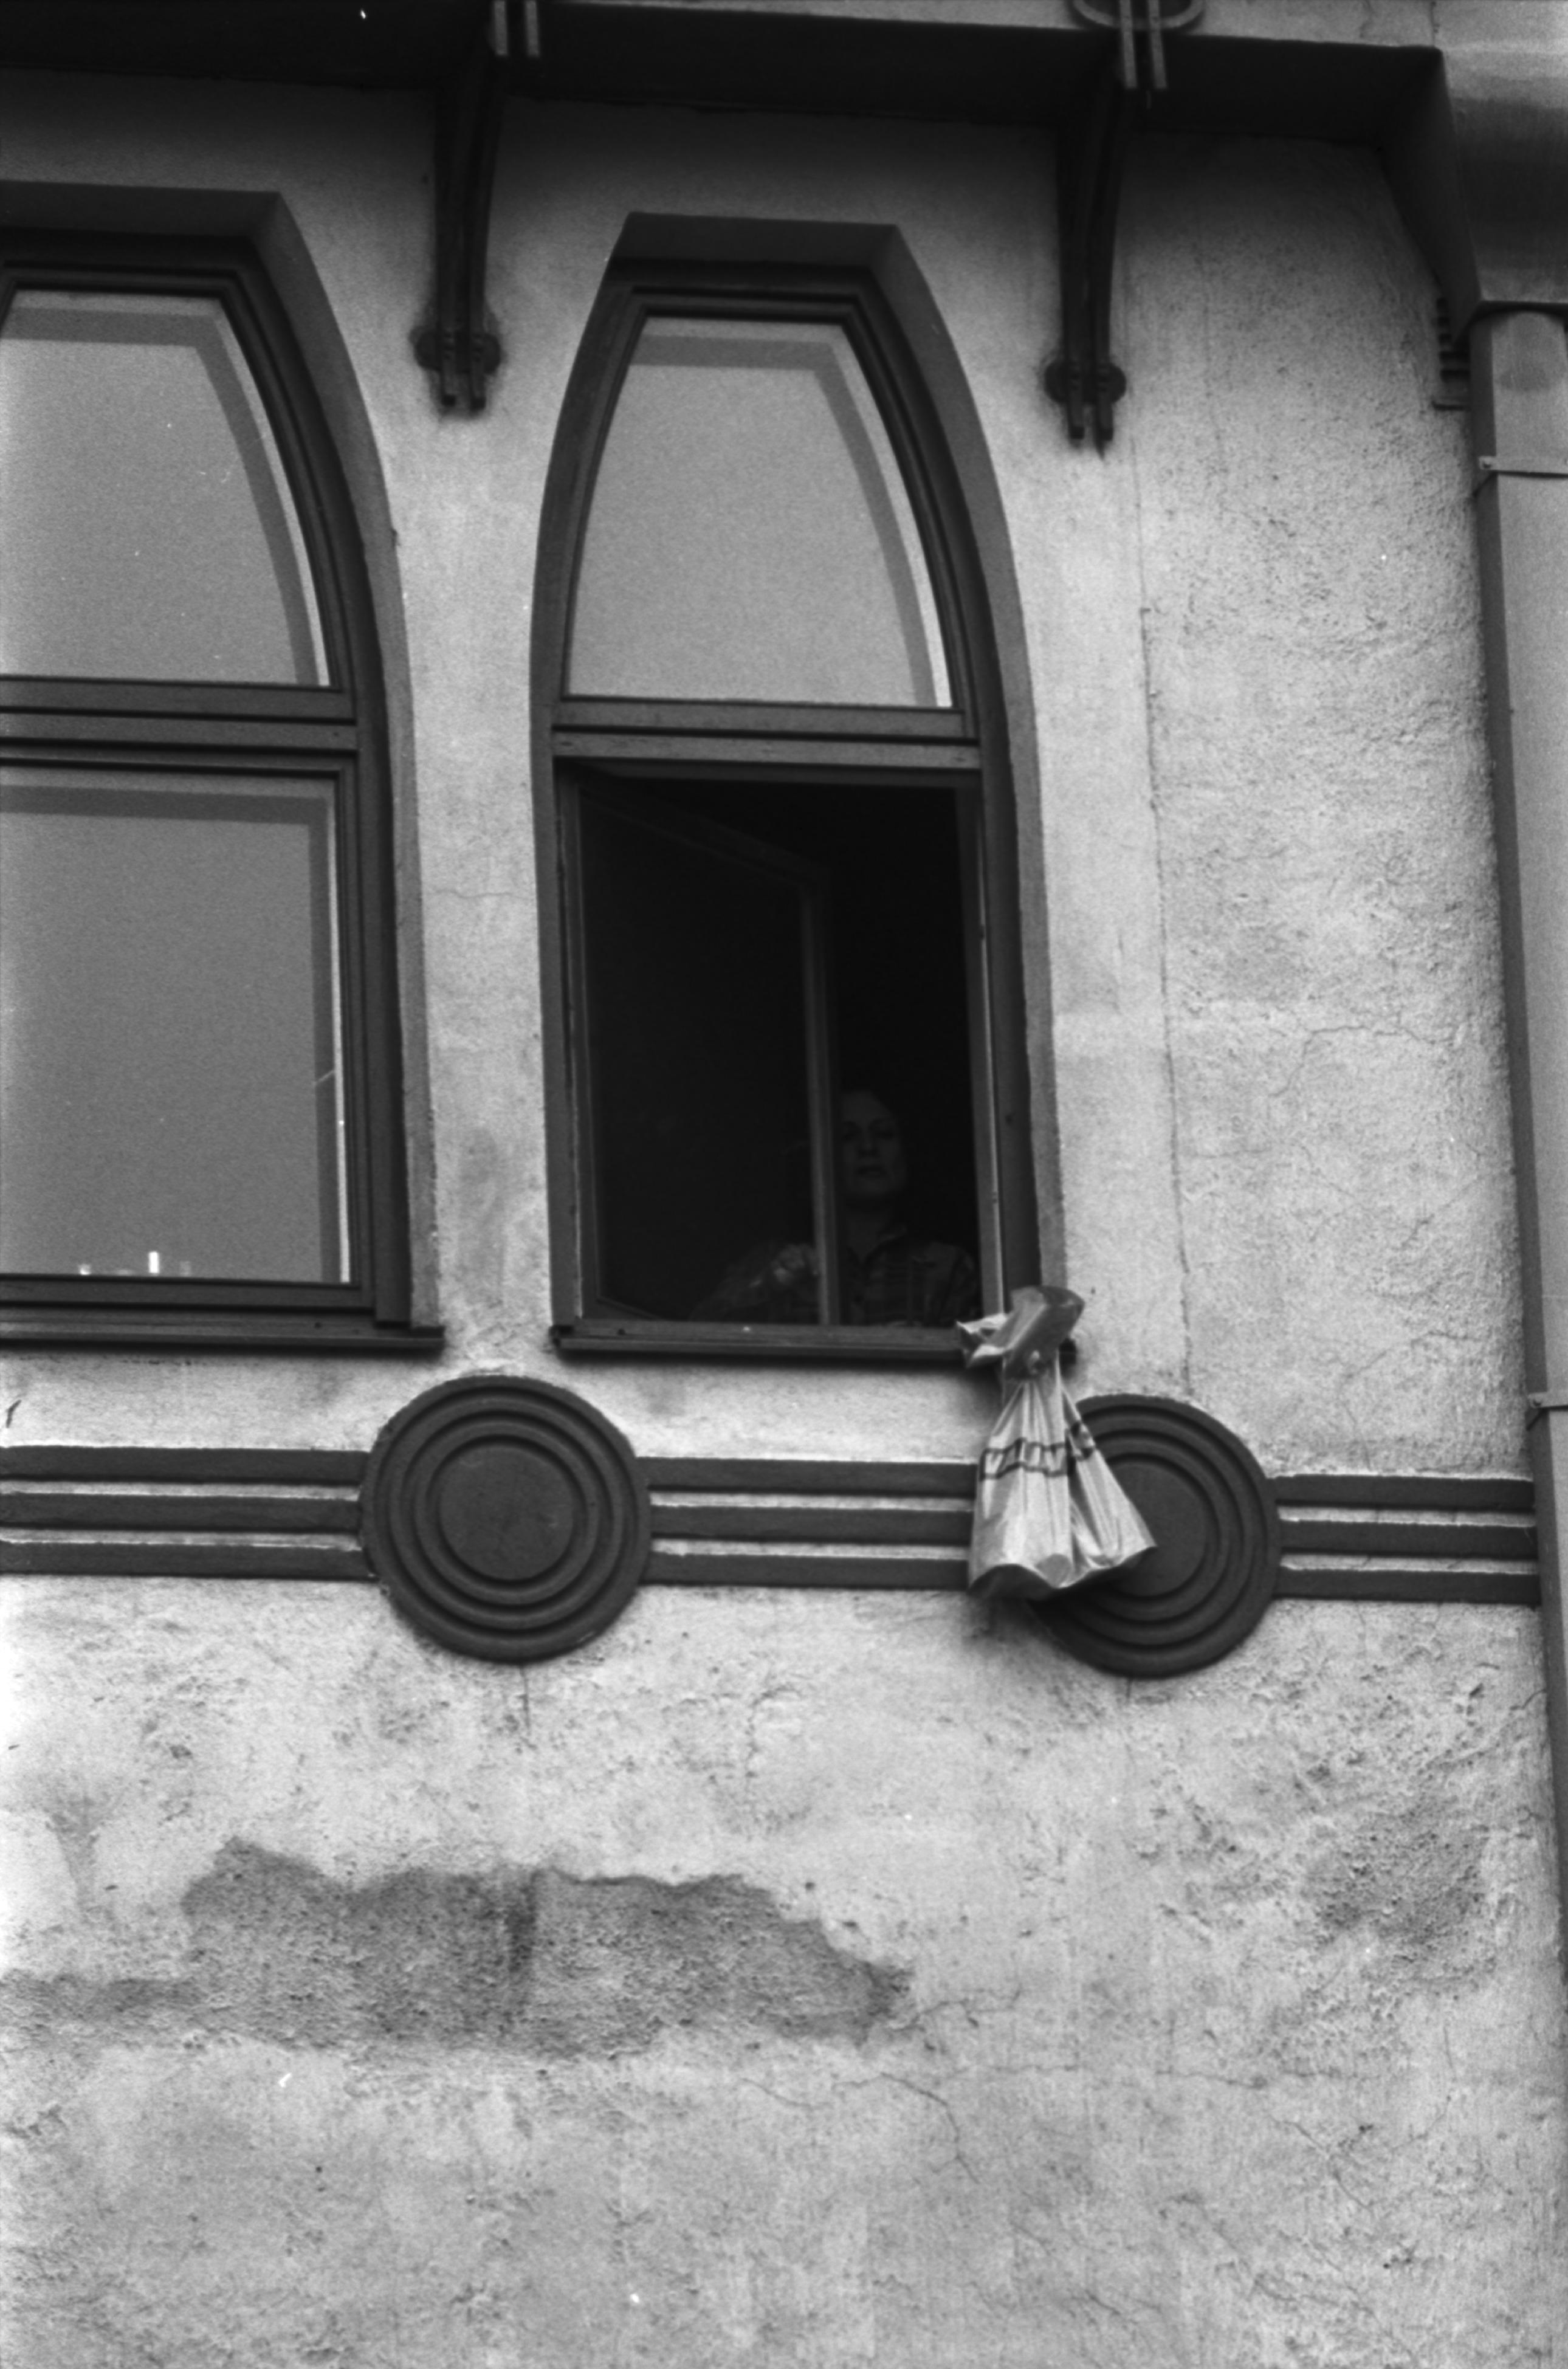 Meritullinkatu 26. Nainen on ripustanut Valintatalon muovikassin asuntonsa ikkunan ulkopuolelle Meritullinkatu 26:n ylimmässä kerroksessa.